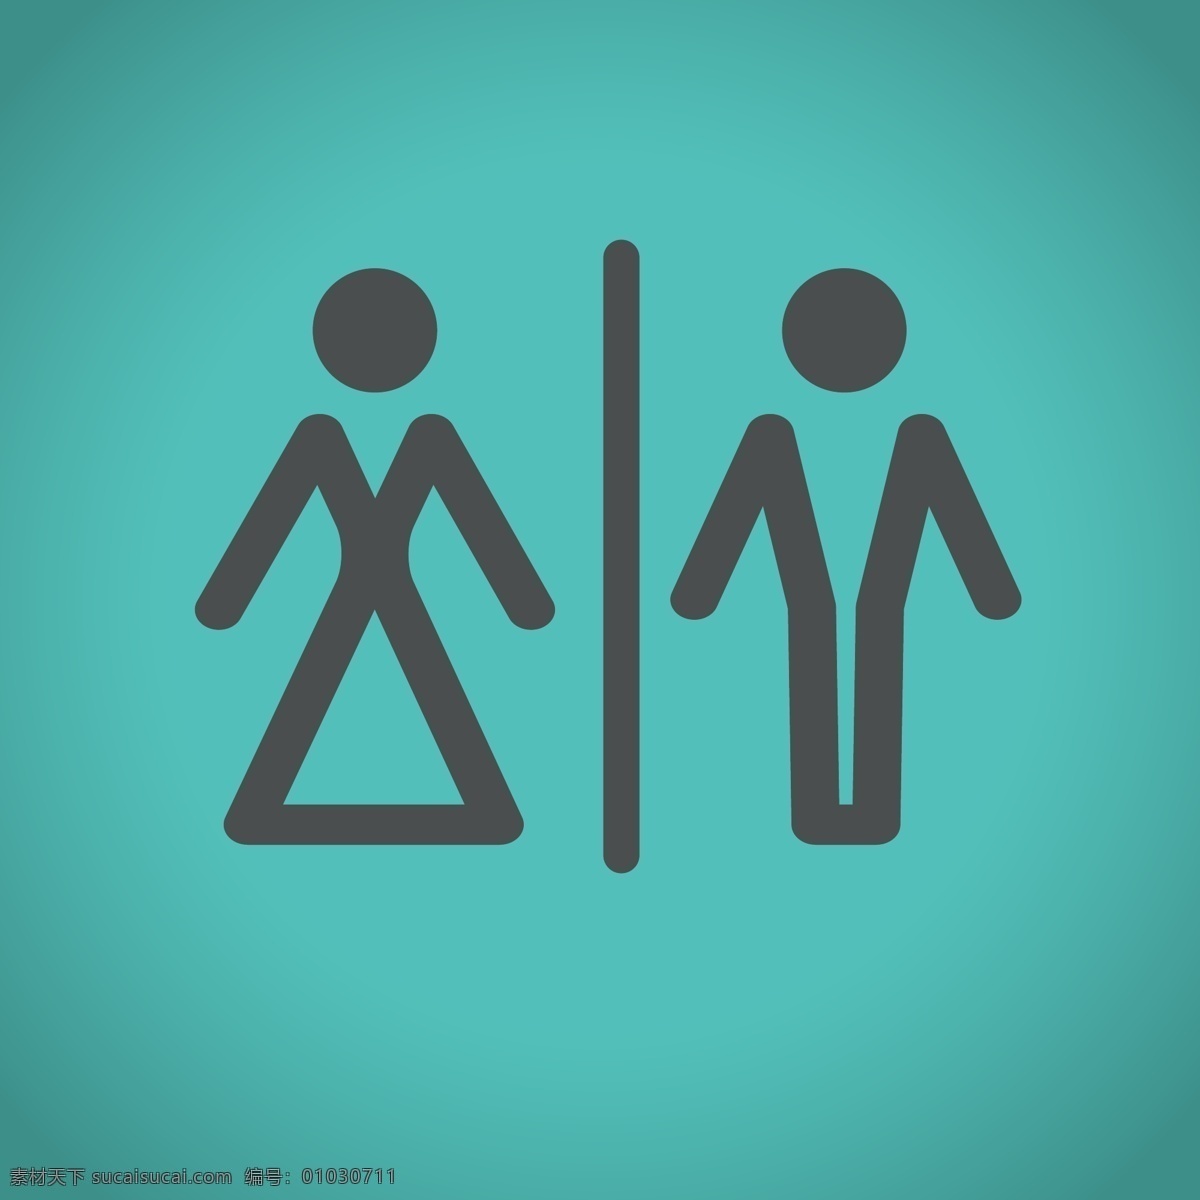 男女图标 男女符号 厕所图标 男性 女性 男性图标 女性图标 图标 标志 标签 logo 矢量 标志图标 网页小图标